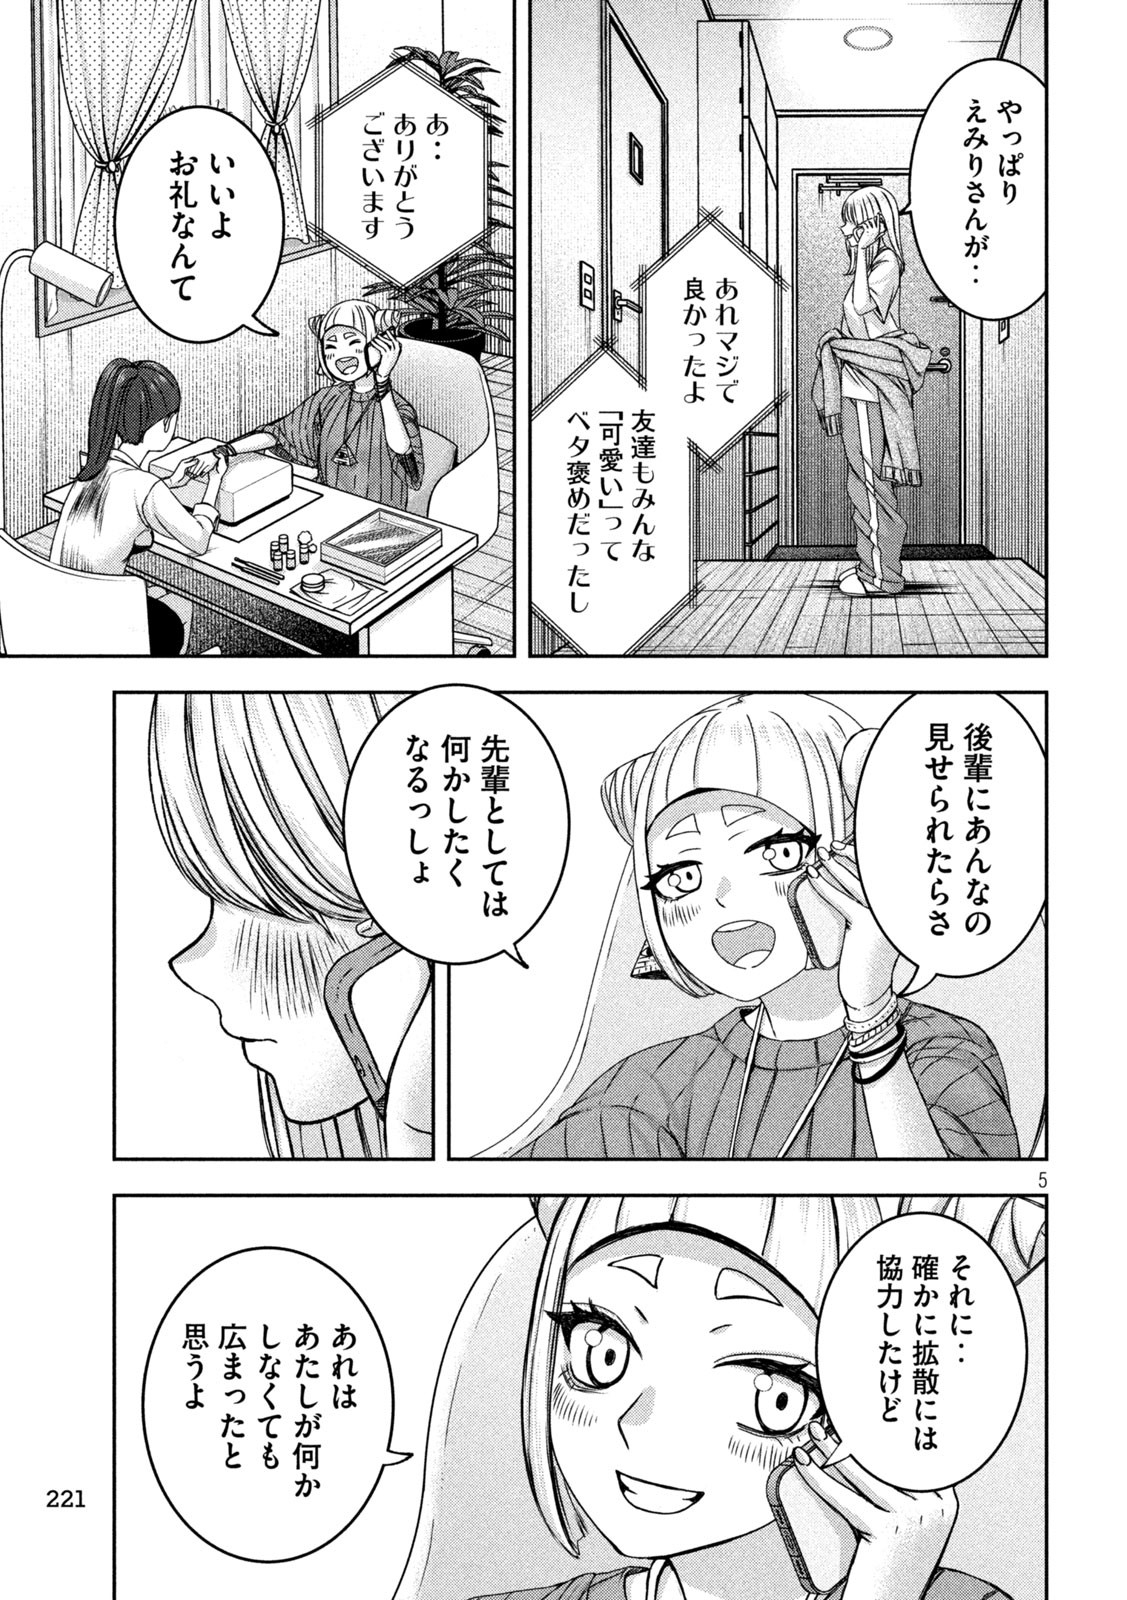 Watashi no Arika - Chapter 37 - Page 5